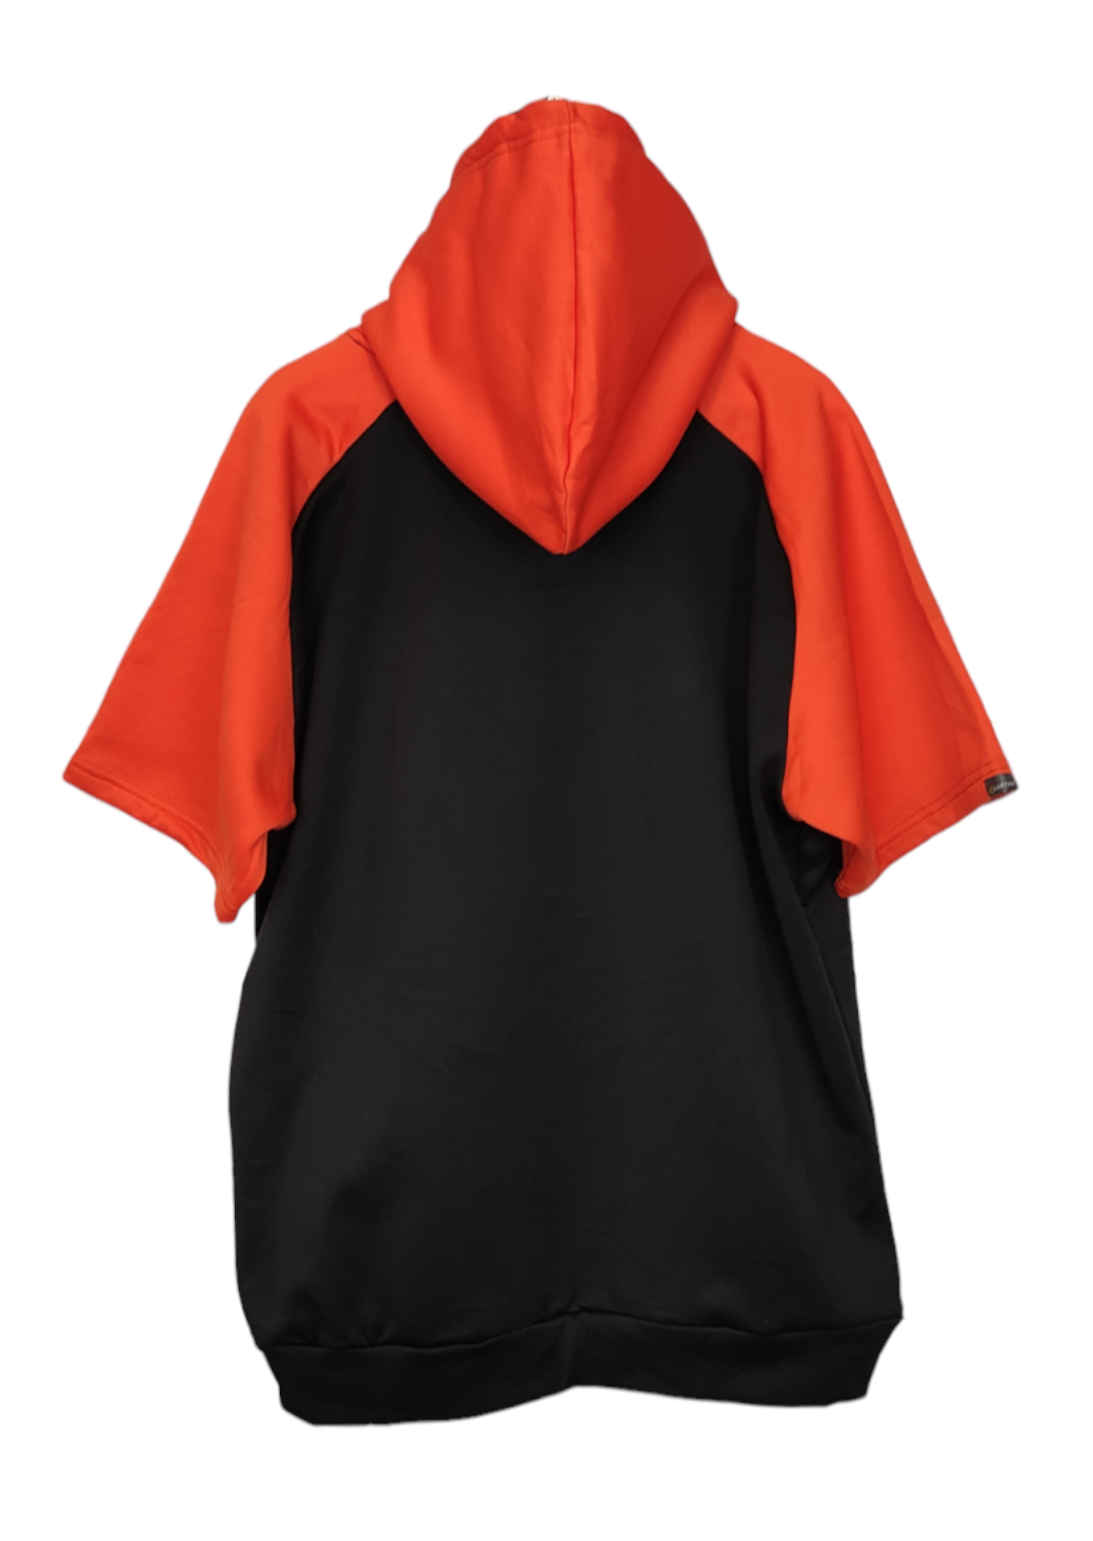 Ανδρική, Σπορ, Τύπου Φούτερ Μπλούζα EASTON σε Πορτοκαλί-Μαύρο Χρώμα (Large)